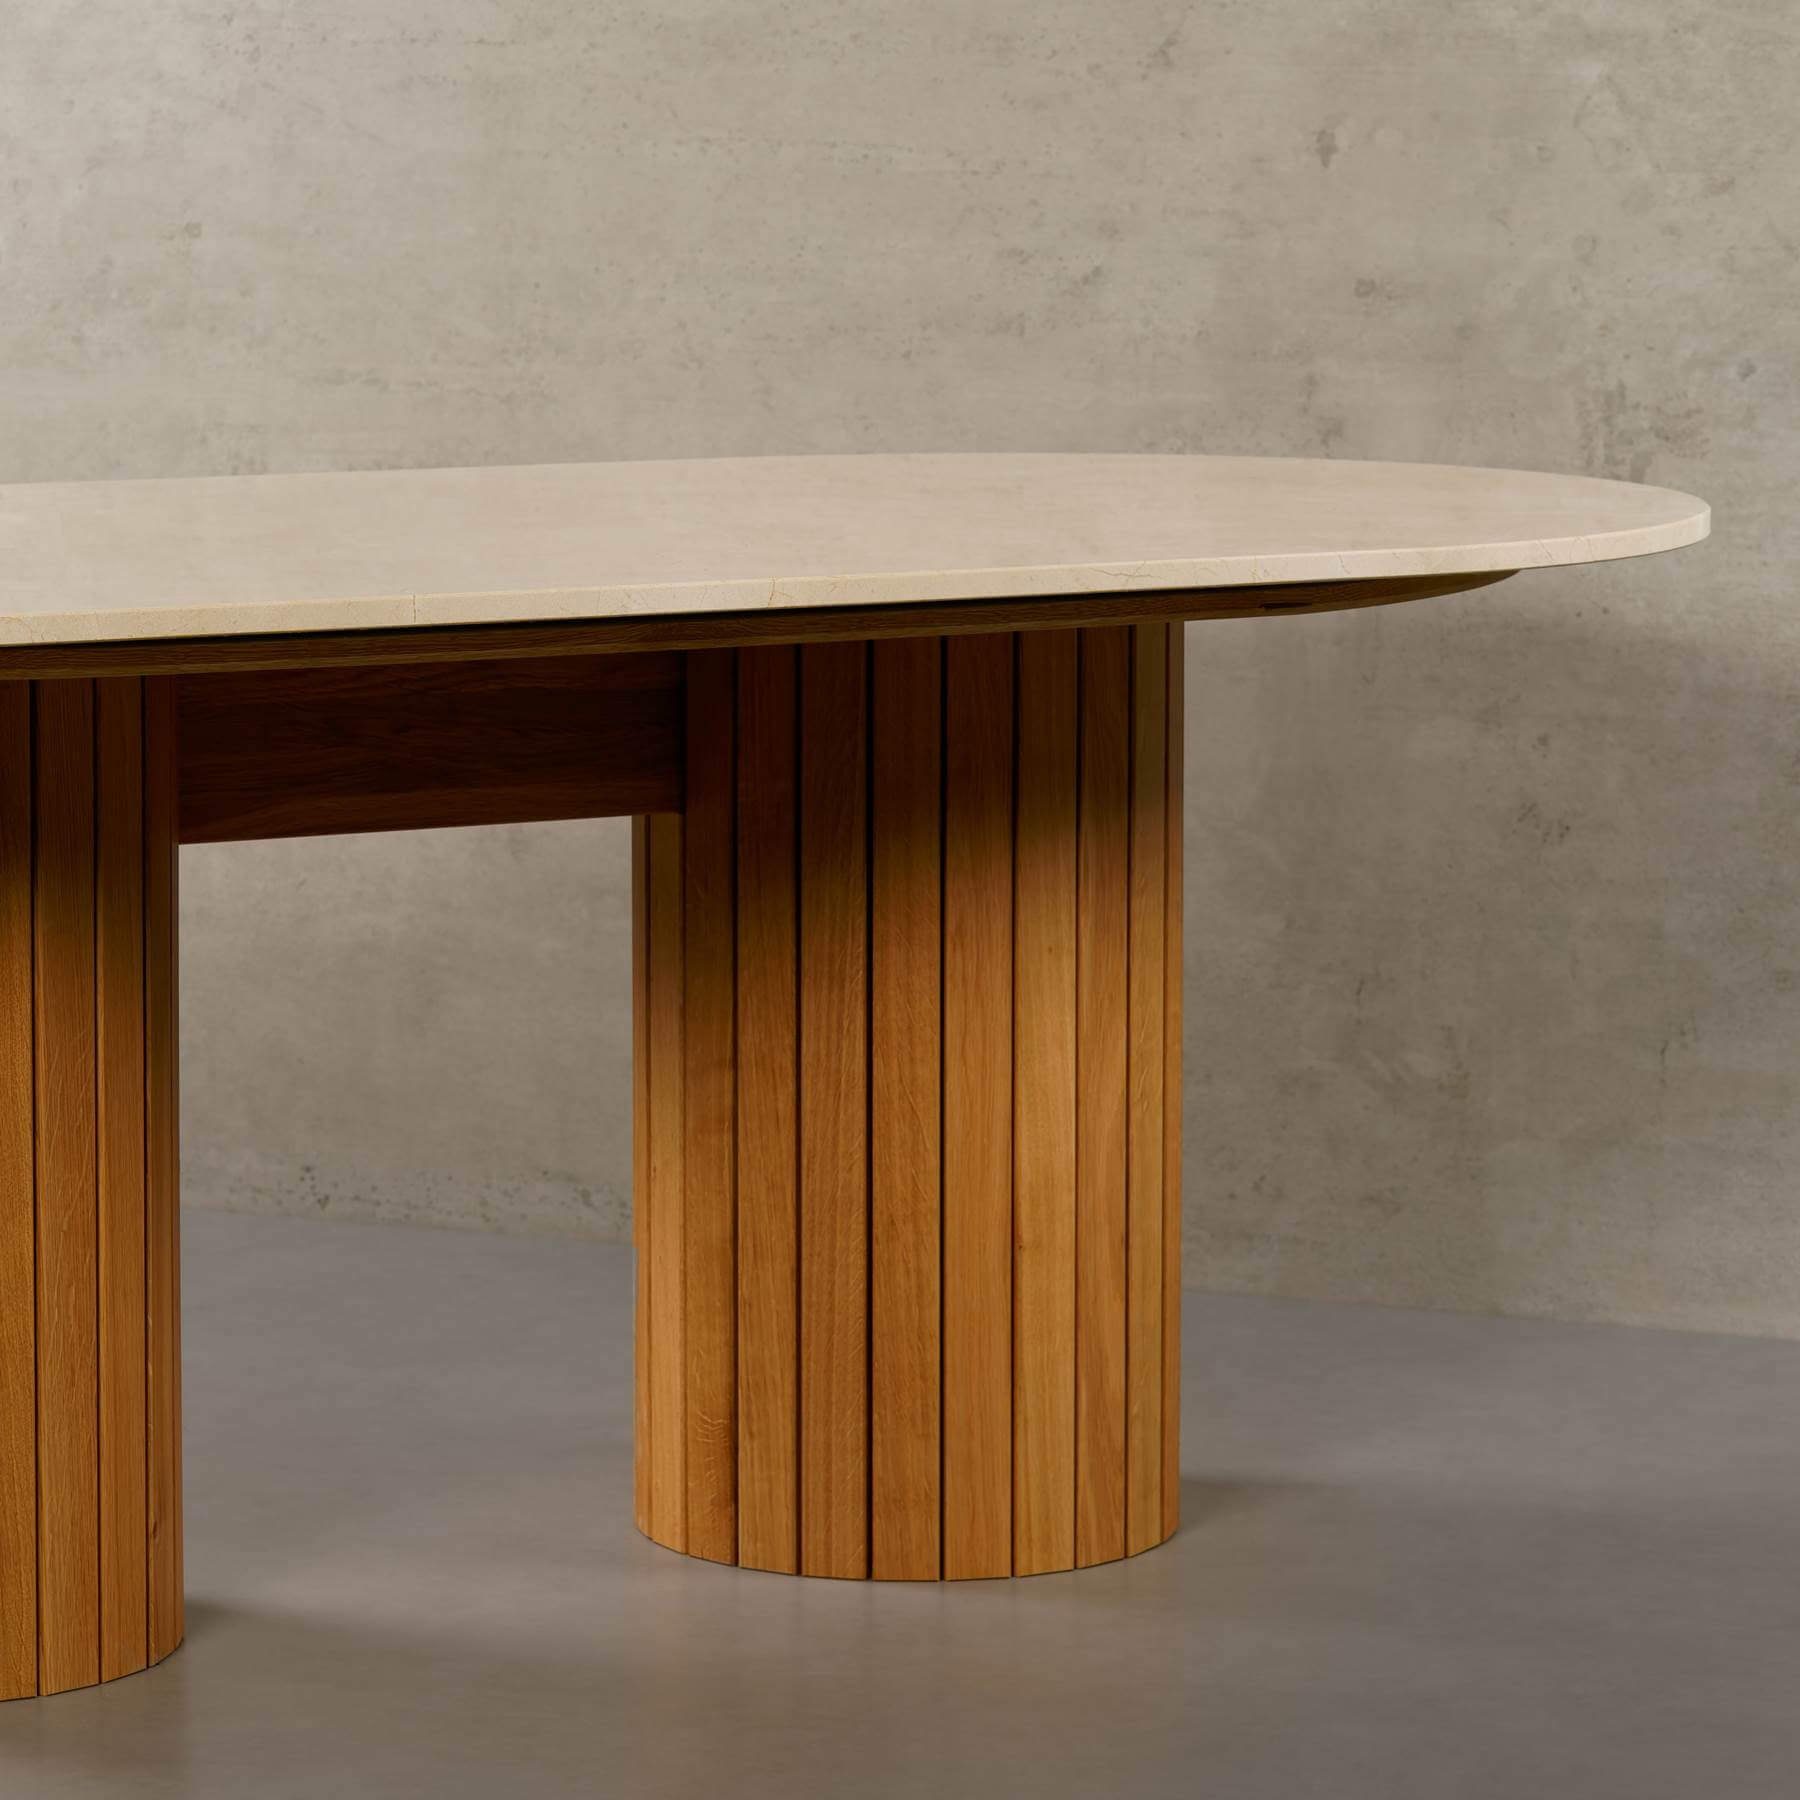 MAGNA Atelier Esstisch Montana mit rund, ECHTEM Tisch 200x100x76cm Esstisch Eichenholz Gestell, Marfil Crema MARMOR